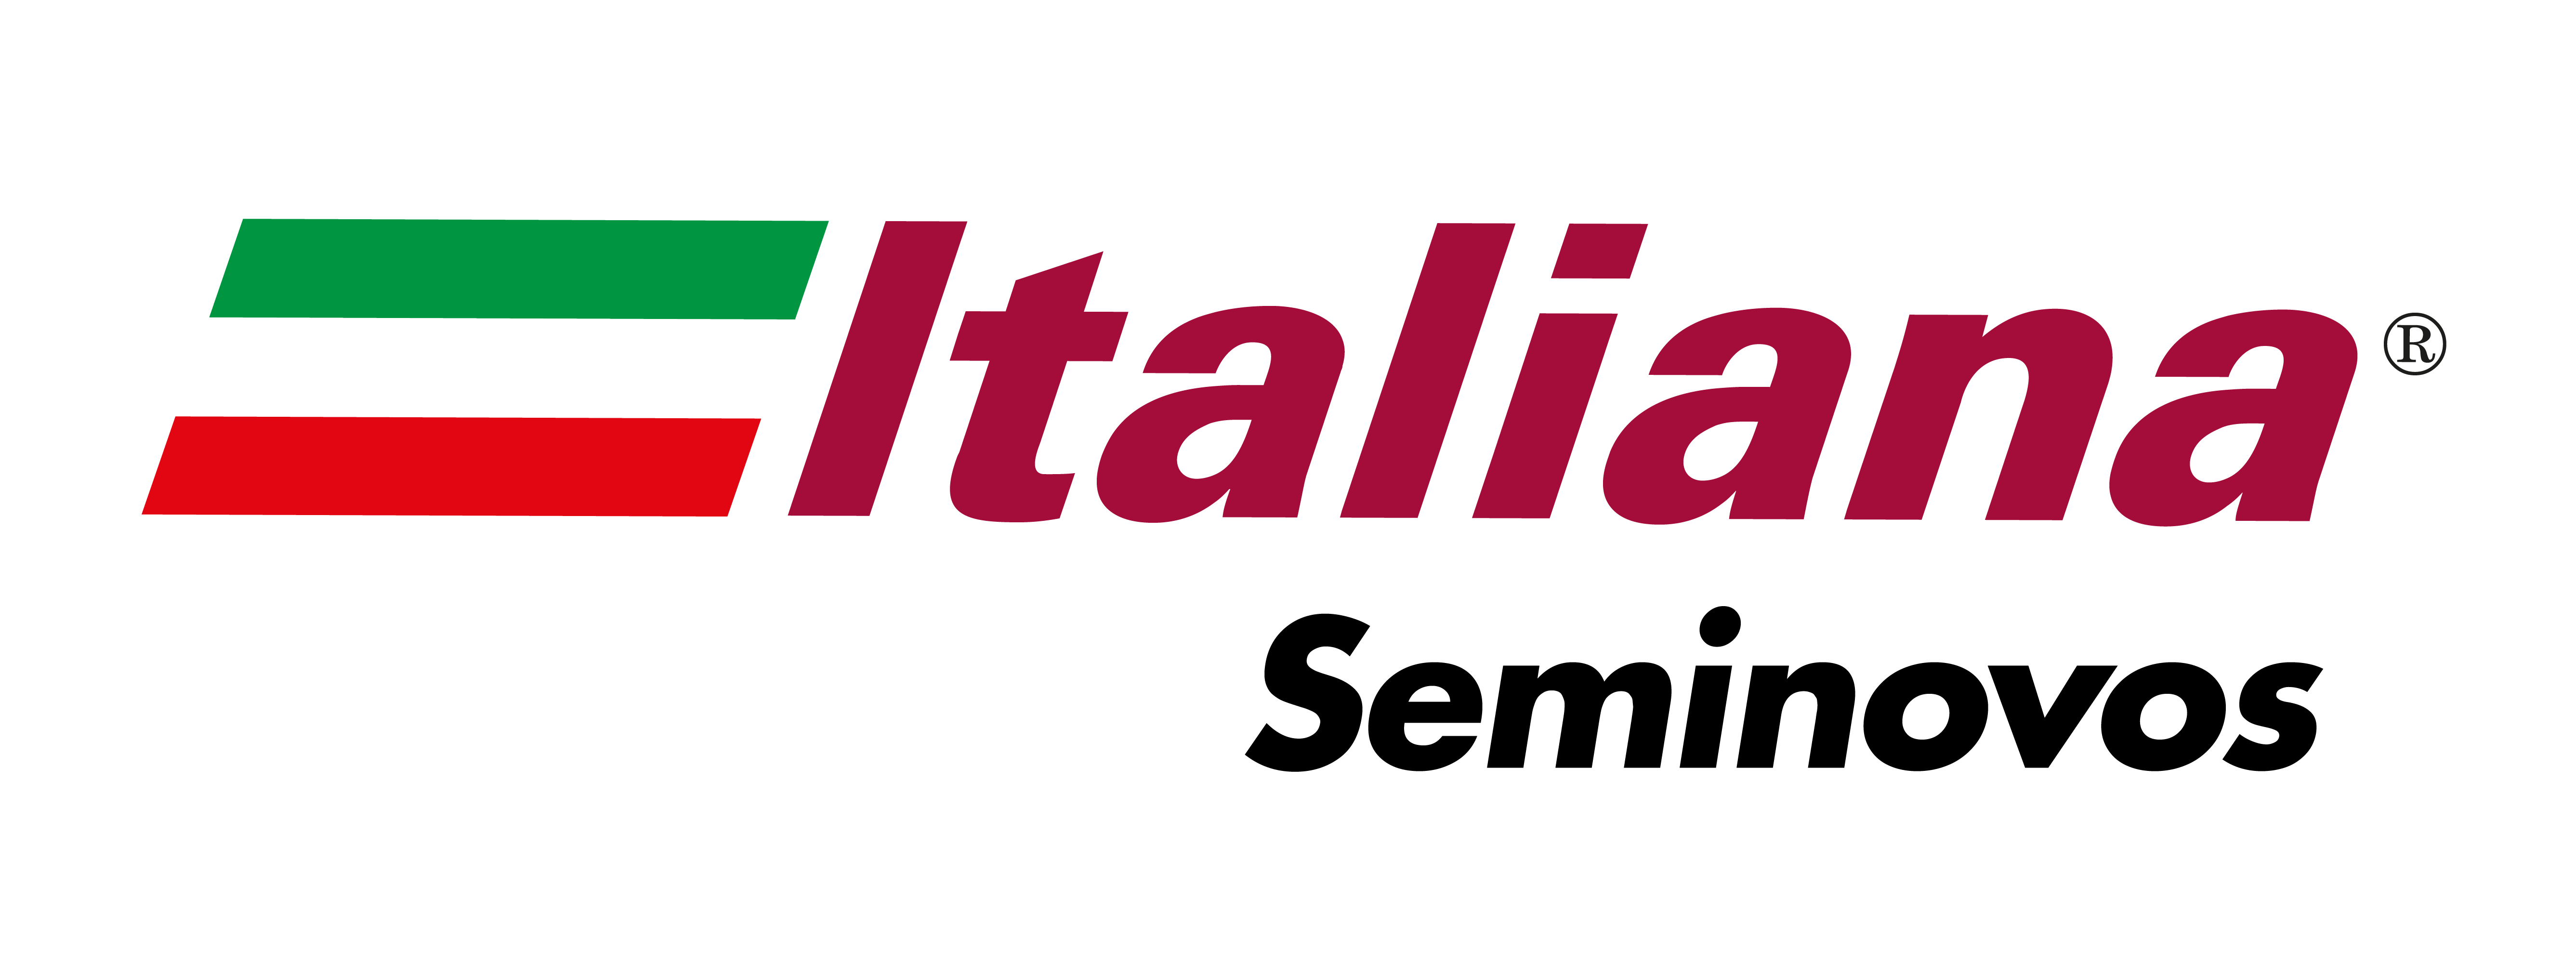 Logo Seminovos Italiana